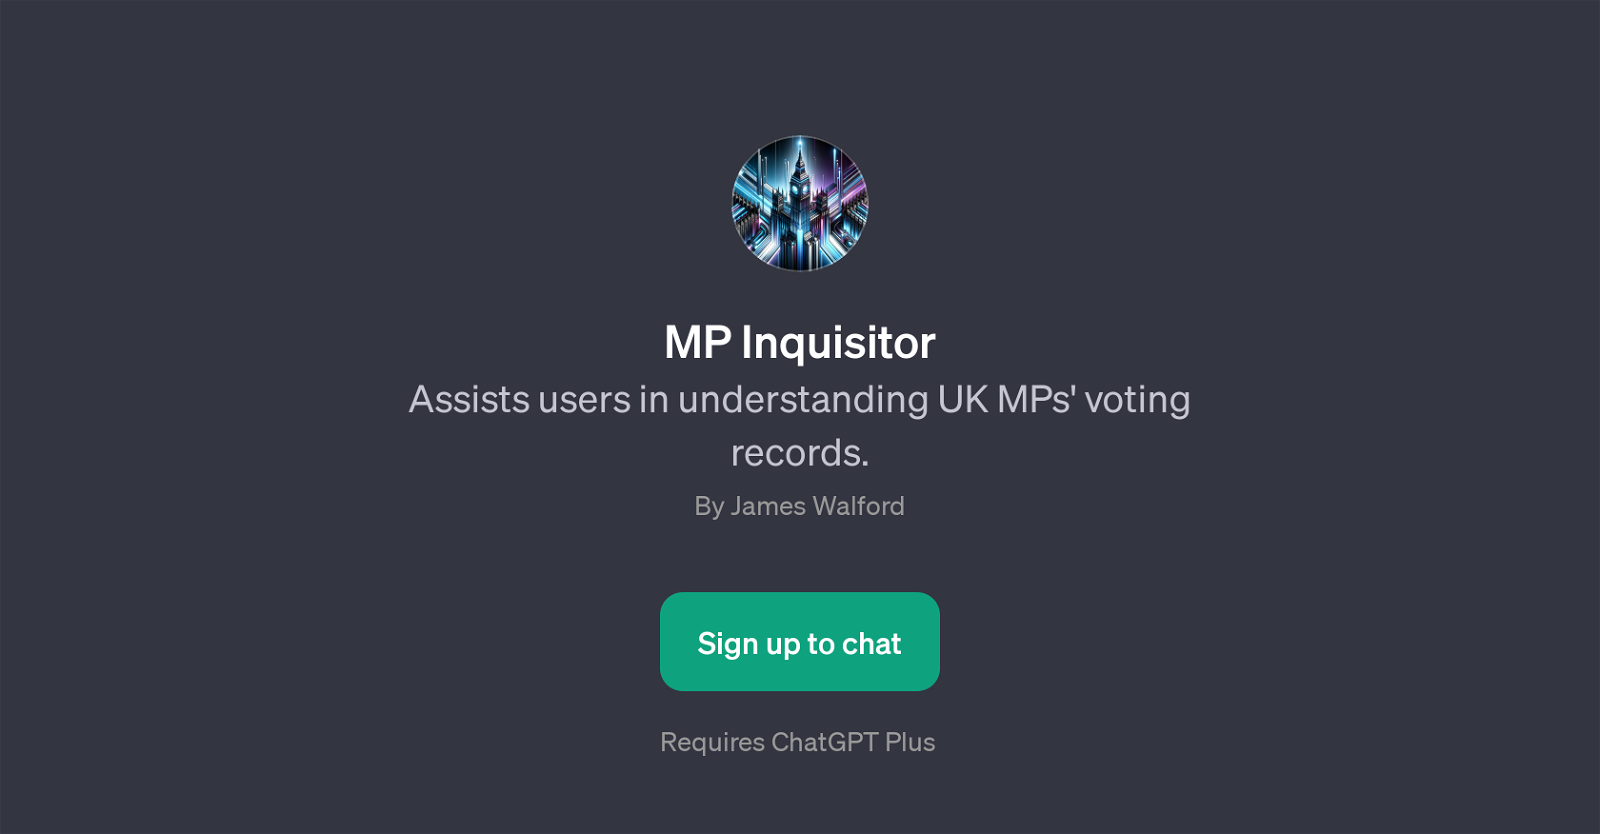 MP Inquisitor website